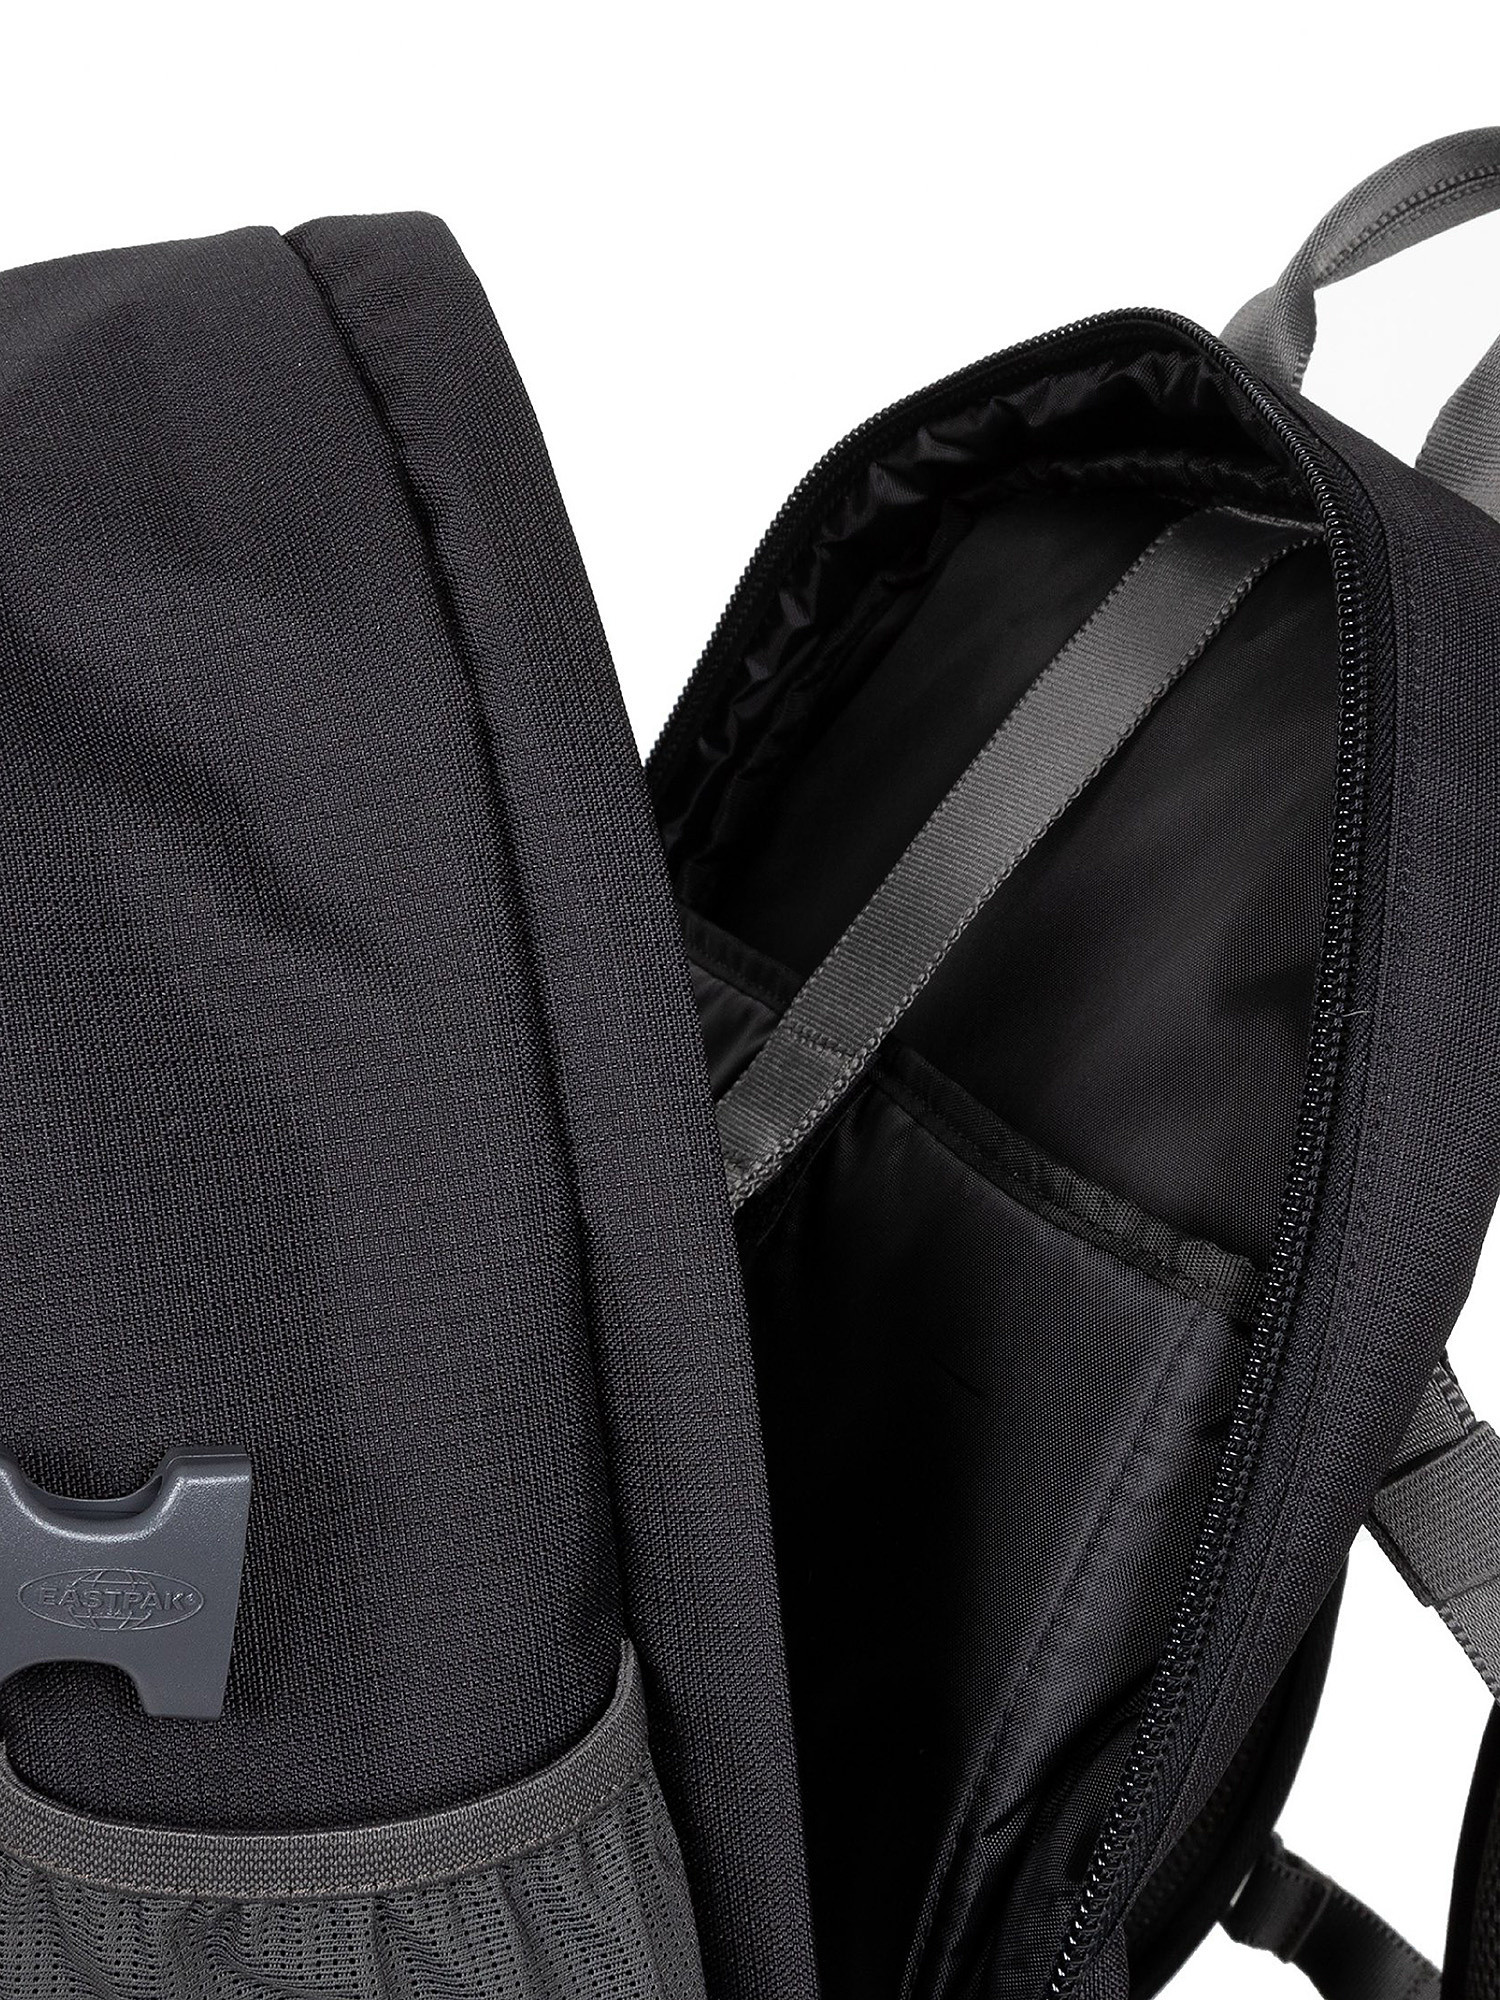 Eastpak - Out Safepack Out Black backpack, Black, large image number 3